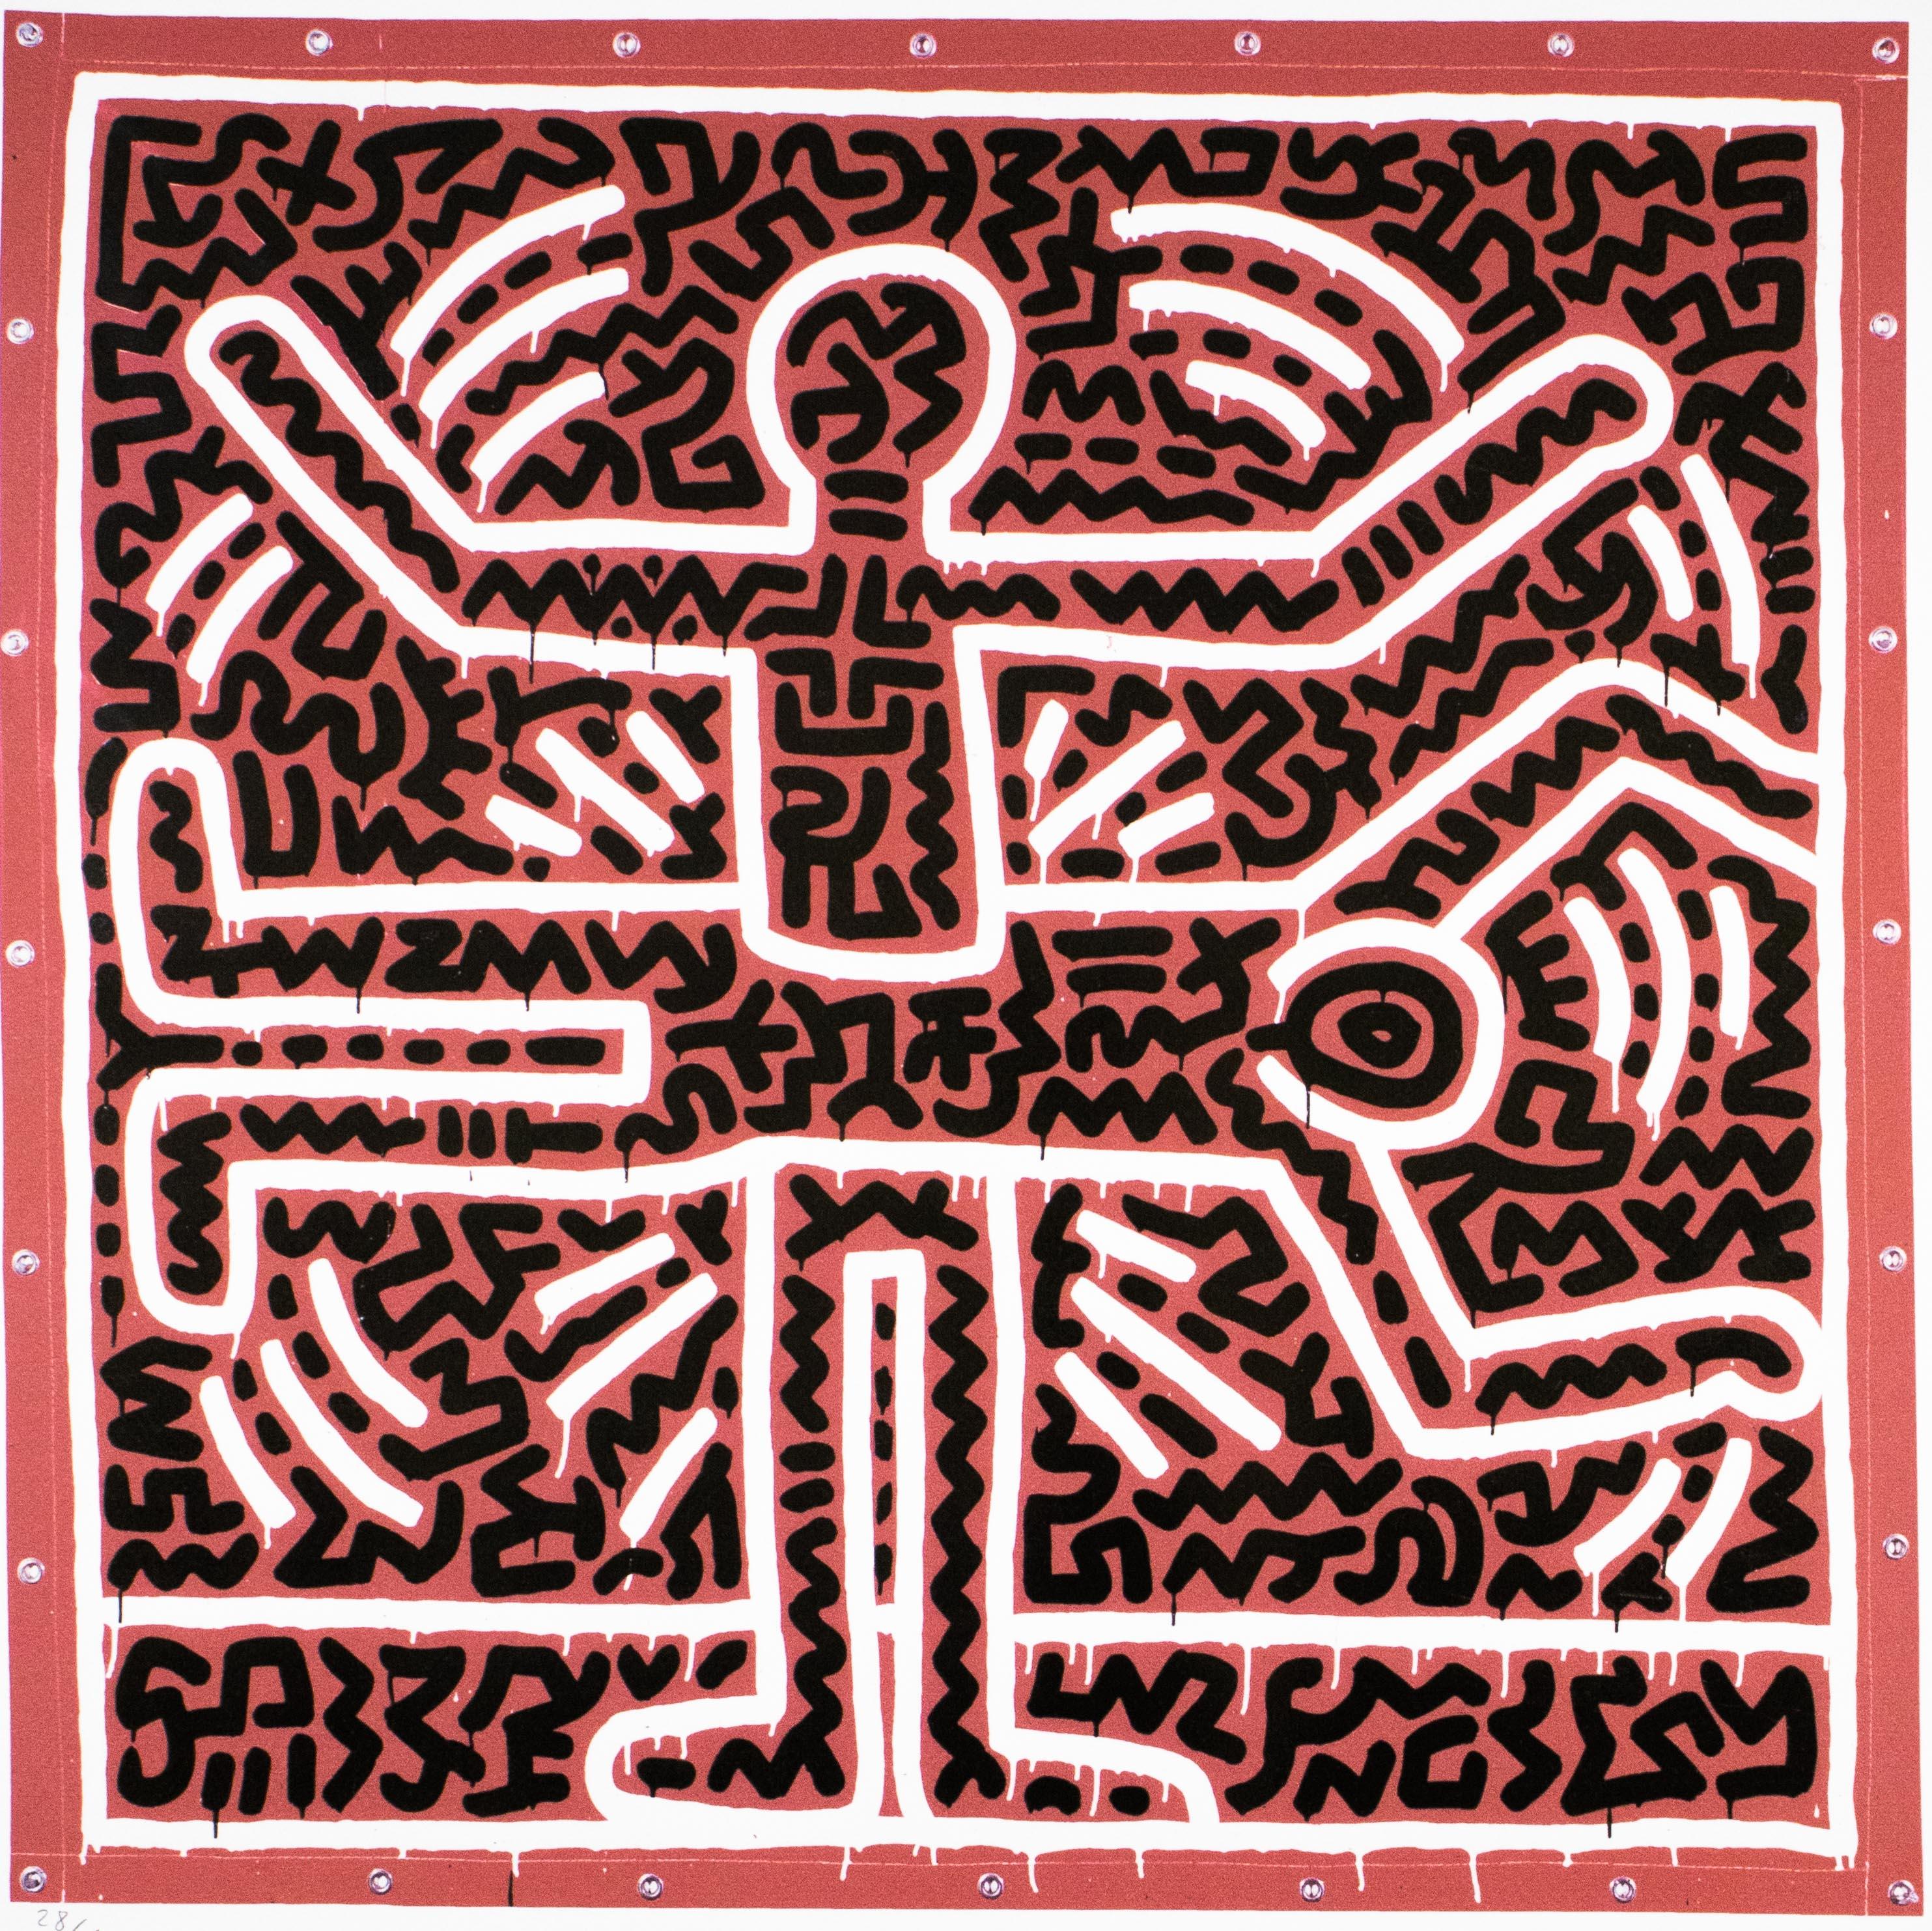 KEITH HARING - Ohne Titel
Limitierte Auflage aus den 1990er Jahren von der Keith Haring Foundation, Inc.

Insgesamt nur 150 Exemplare (hier 28/150).
Lithographie auf dickem Karton.

In der Platte signiert.
Mit Bleistift handnummerierte Ausgabe.
Mit